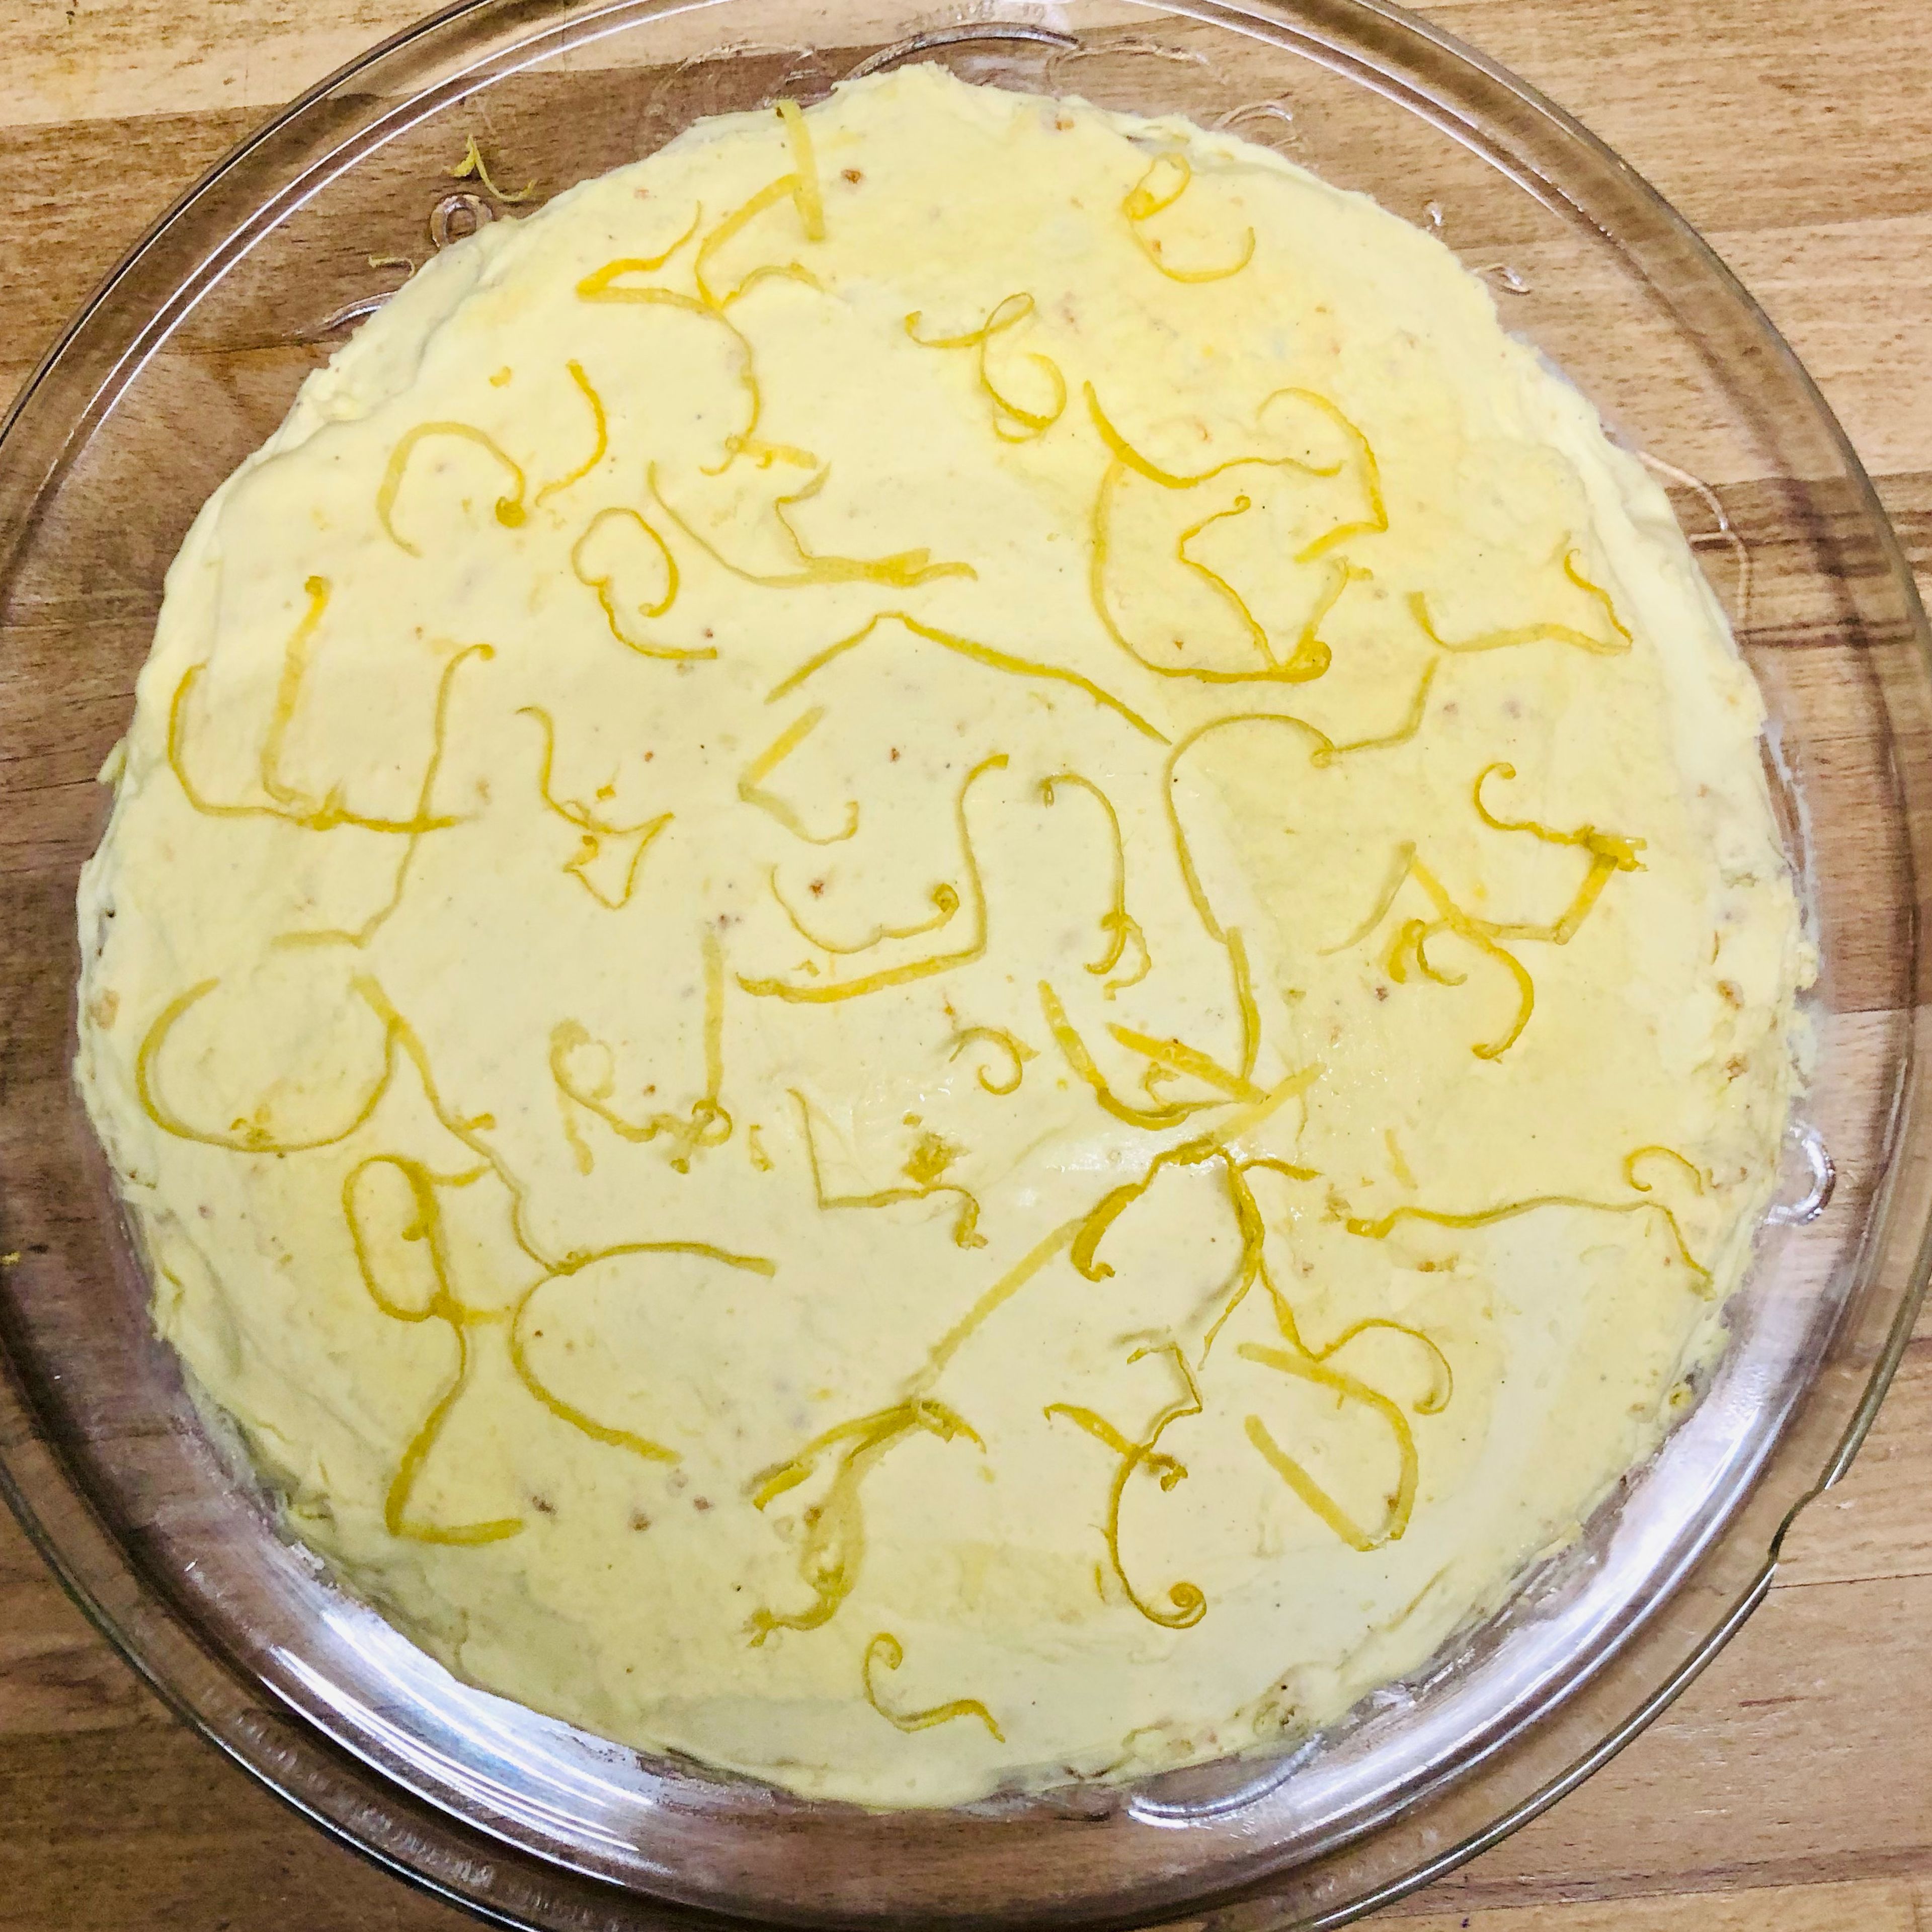 Jetzt wird der Zitronenkuchen einmal durchgeschnitten. Zwischen die Böden wird das Zitronen-Pudding-Frosting gestrichen und auch der Kuchen wird damit eingestrichen. Die Zitronenzesten werden auf die Oberfläche des Kuchens gelegt.